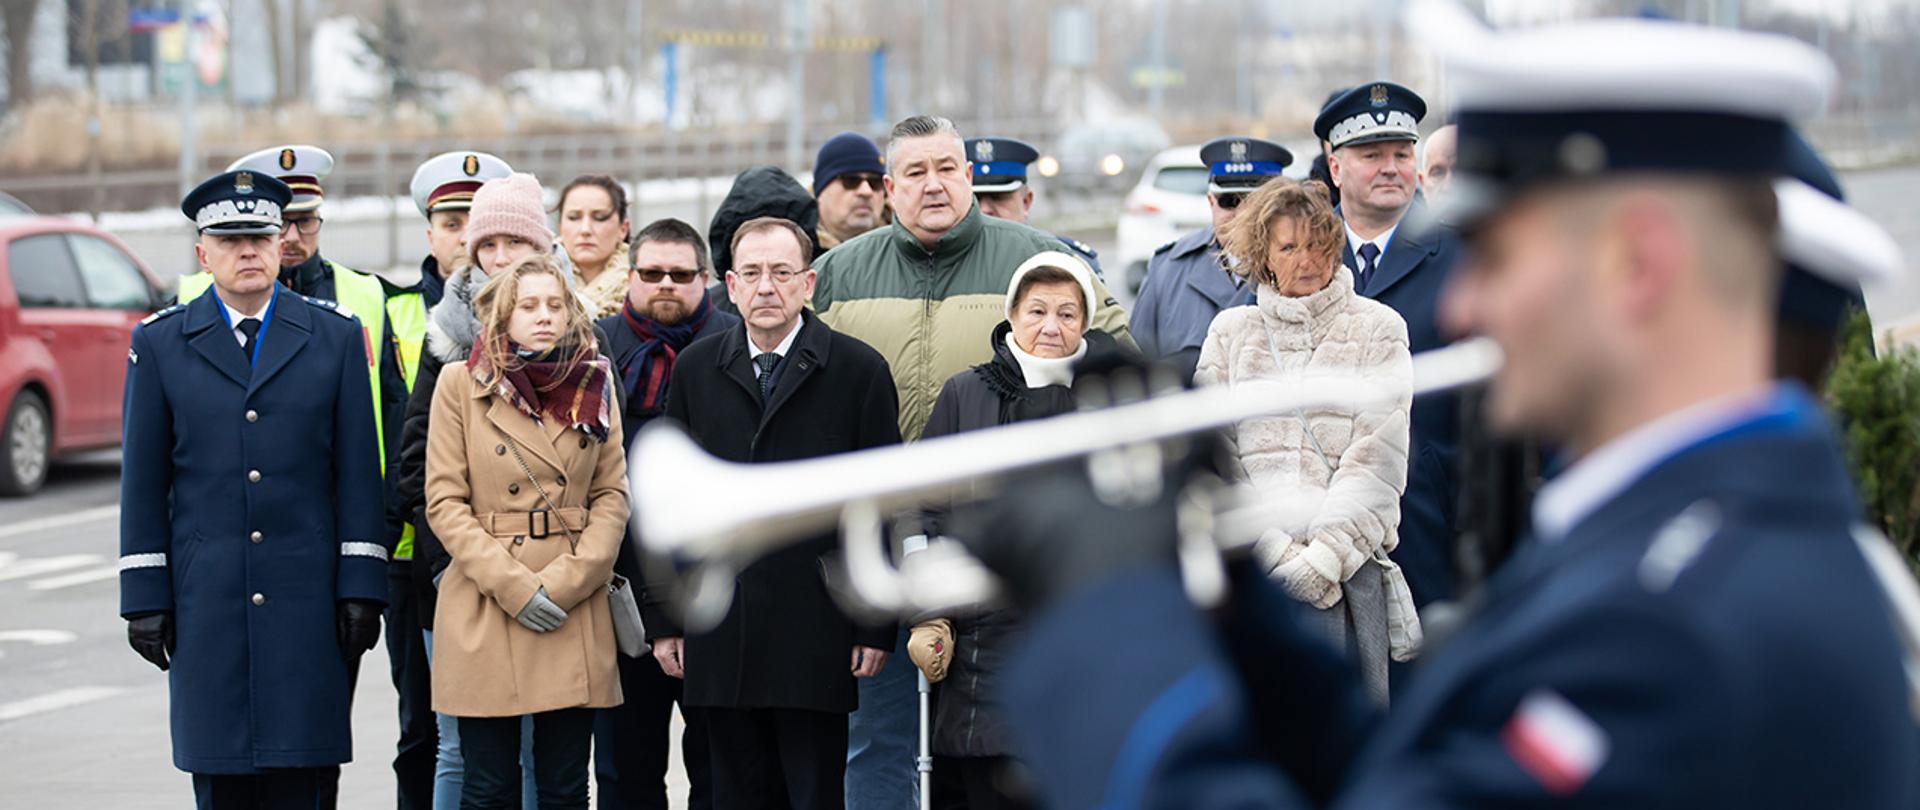 Na zdjęciu widać uczestników uroczystości, m. in. ministra Mariusza Kamińskiego i rodzinę podkomisarza Policji Andrzeja Struja.